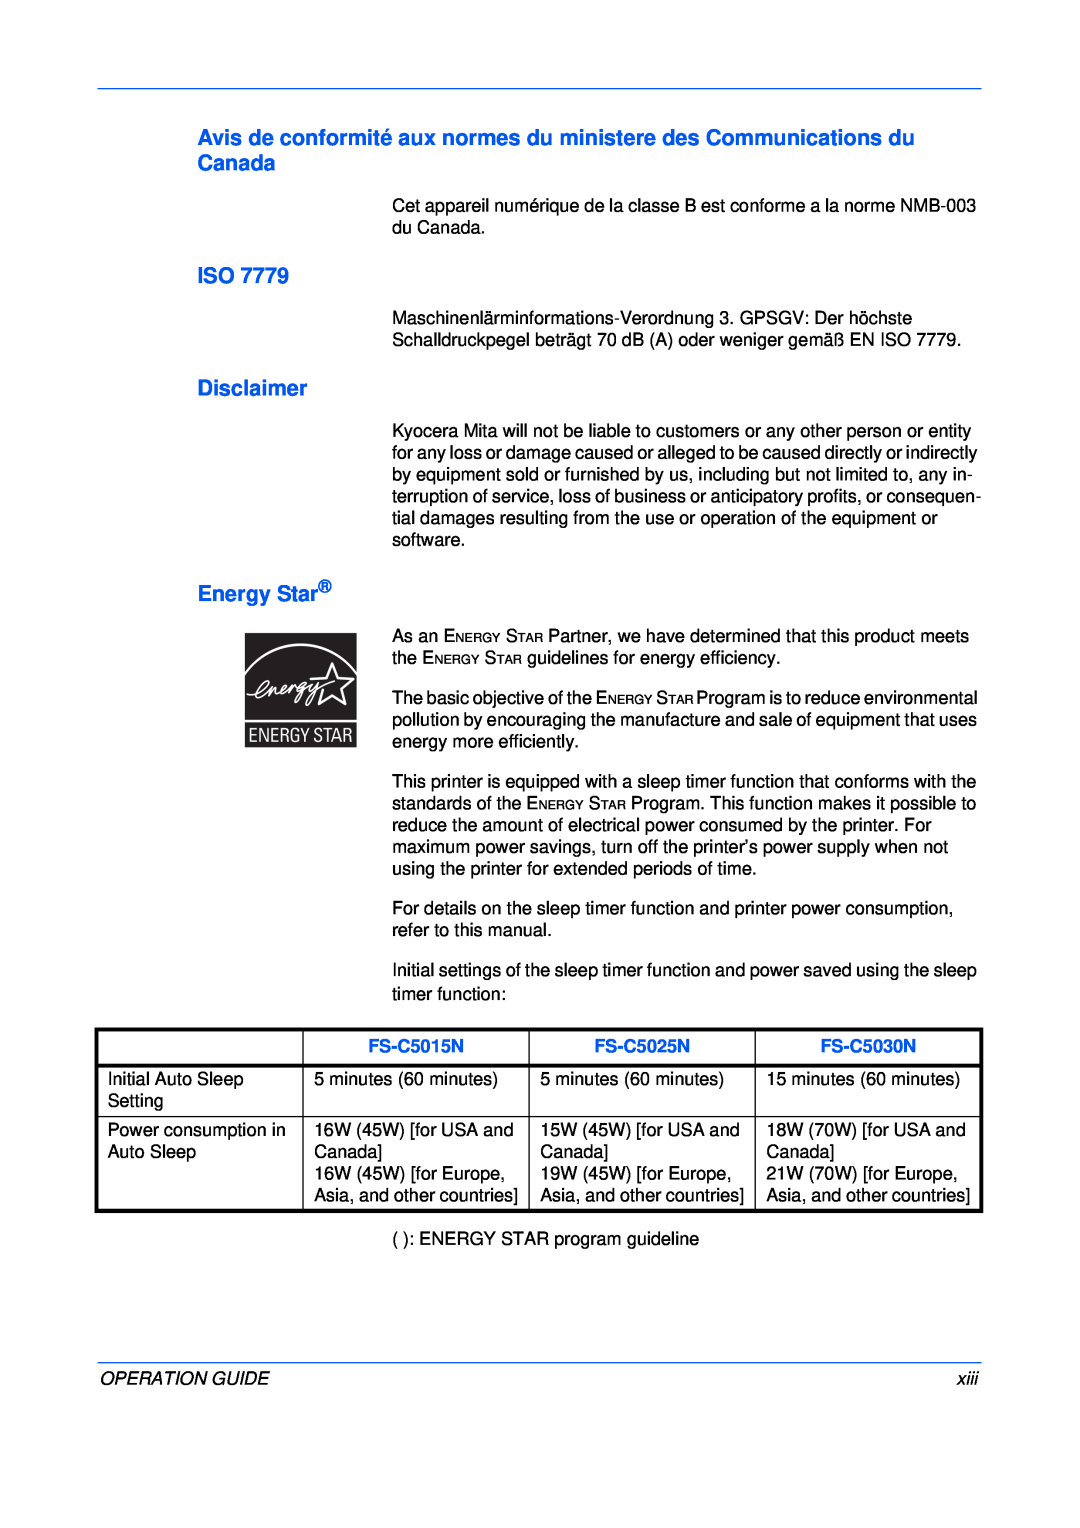 Kyocera FS-C5025N manual Disclaimer, Energy Star, FS-C5015N, FS-C5030N, Operation Guide, xiii 